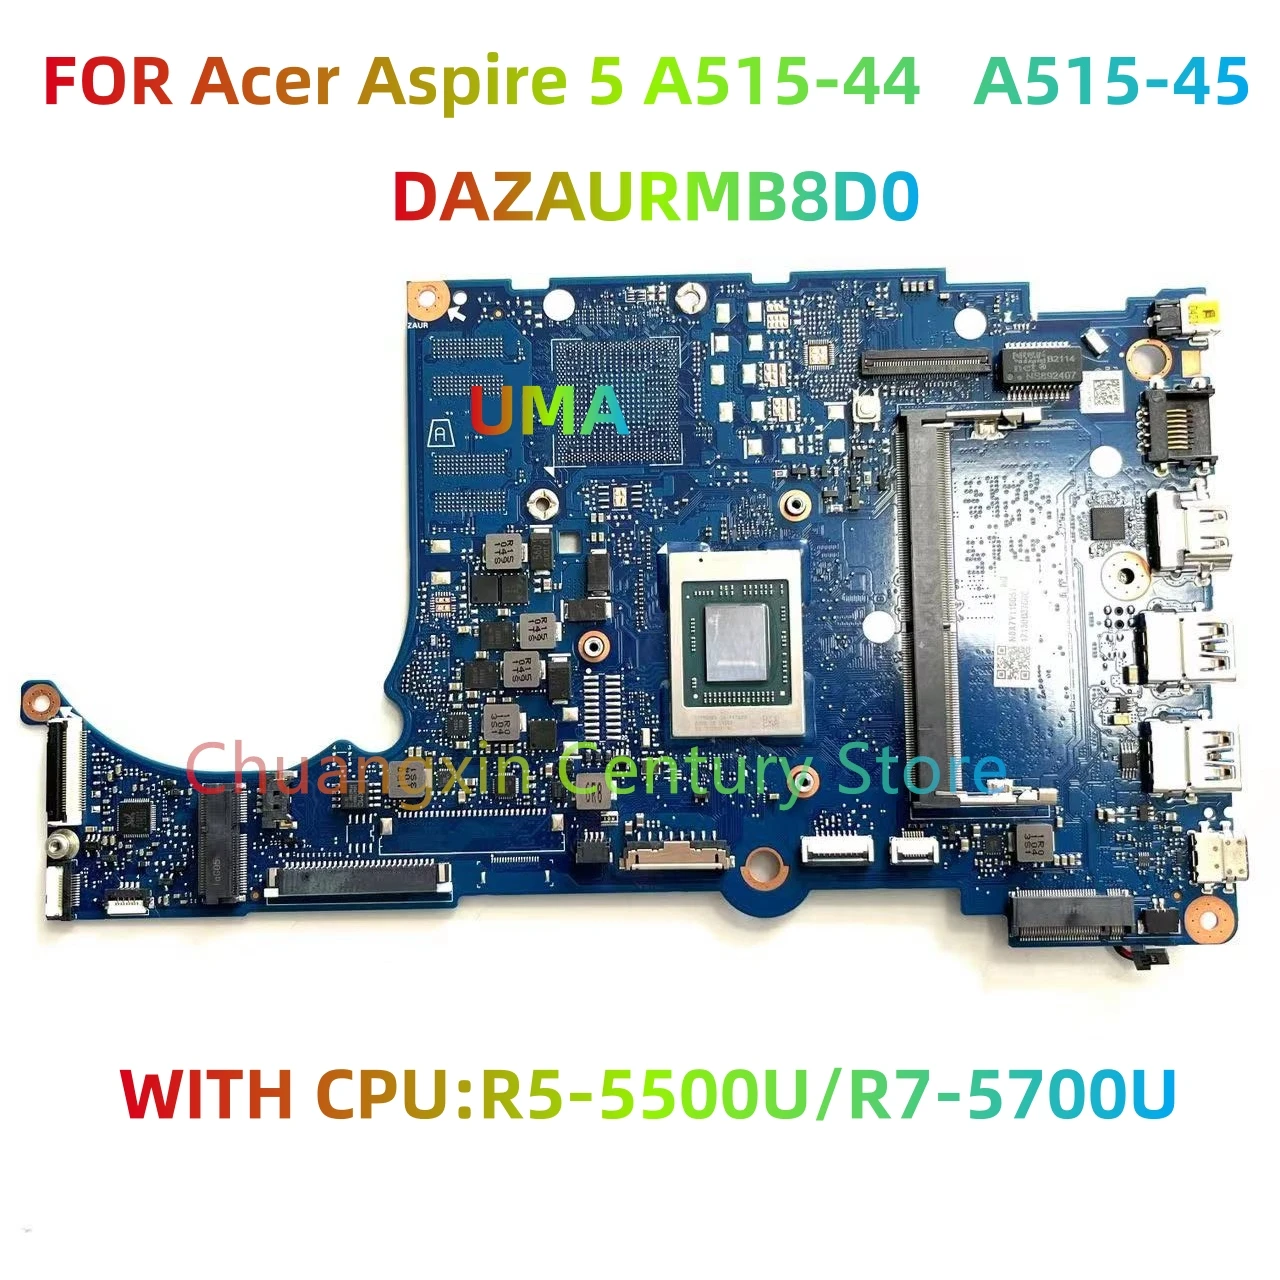 

Материнская плата DAZAURMB8D0 подходит для Acer Aspire 5 A515-44/A515-45 ноутбуки с процессором R5 R7 RMA 100% протестированы и отправлены